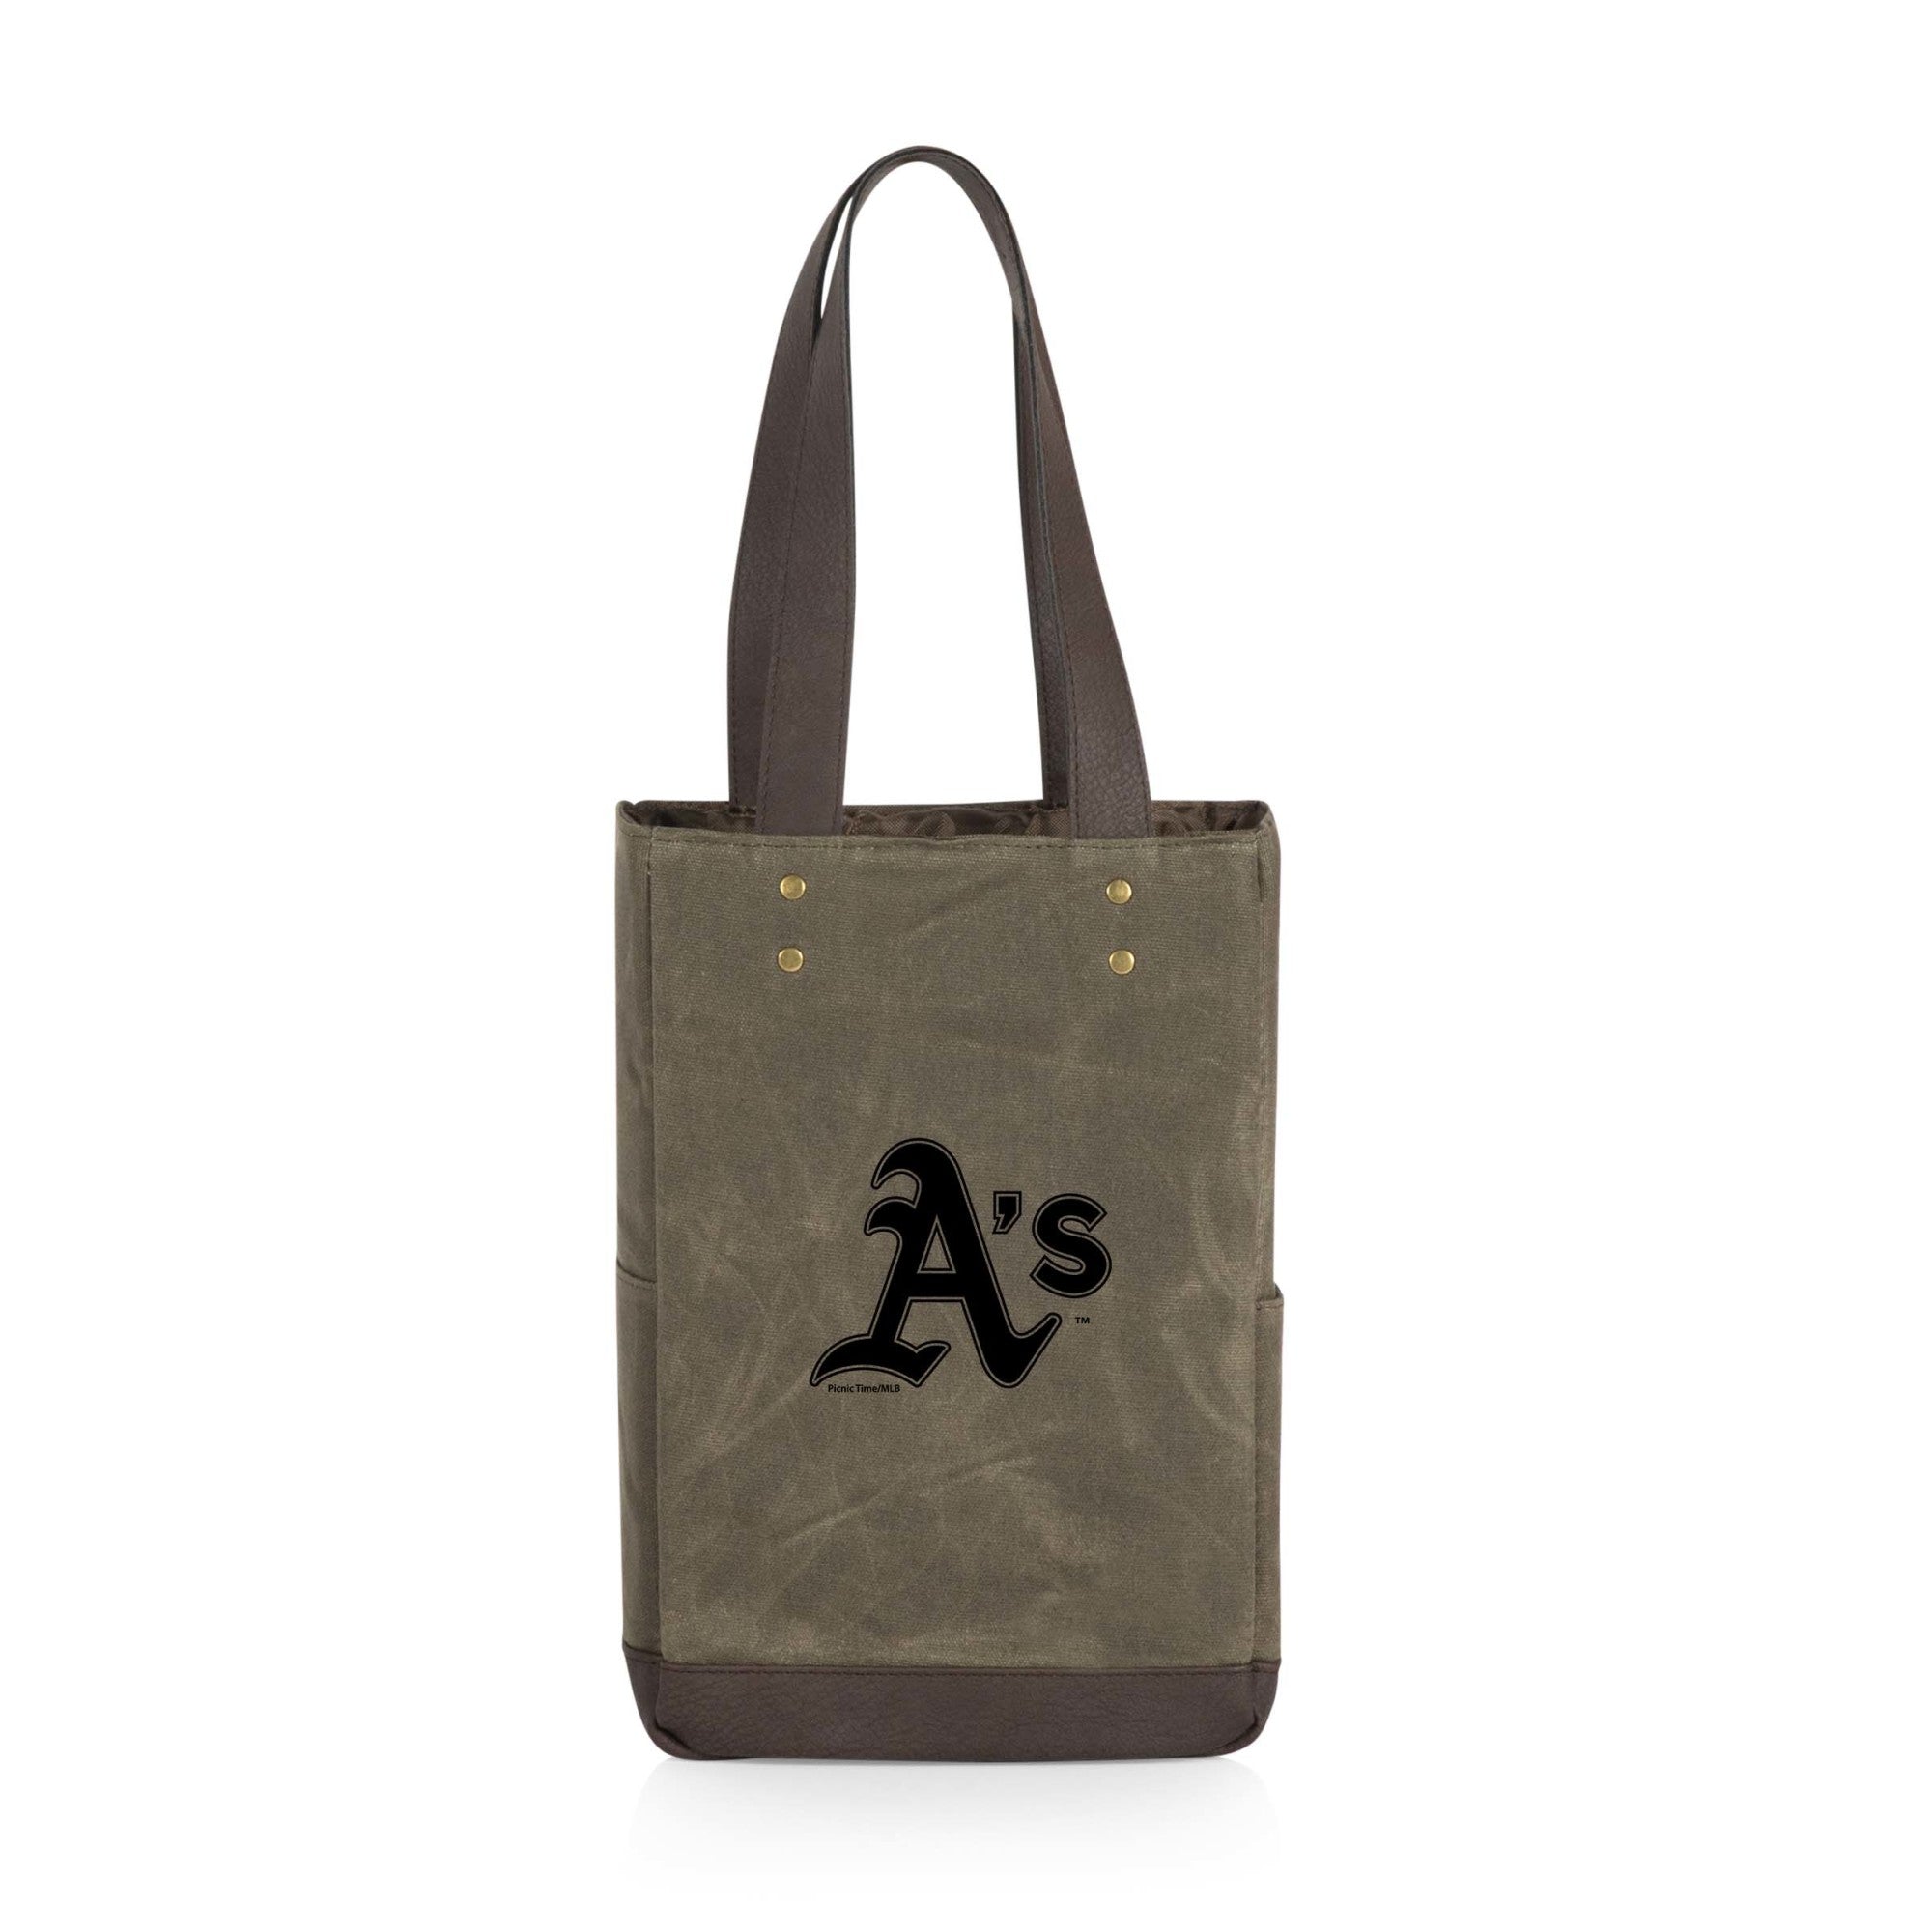 Oakland Athletics - 2 Bottle Insulated Wine Cooler Bag